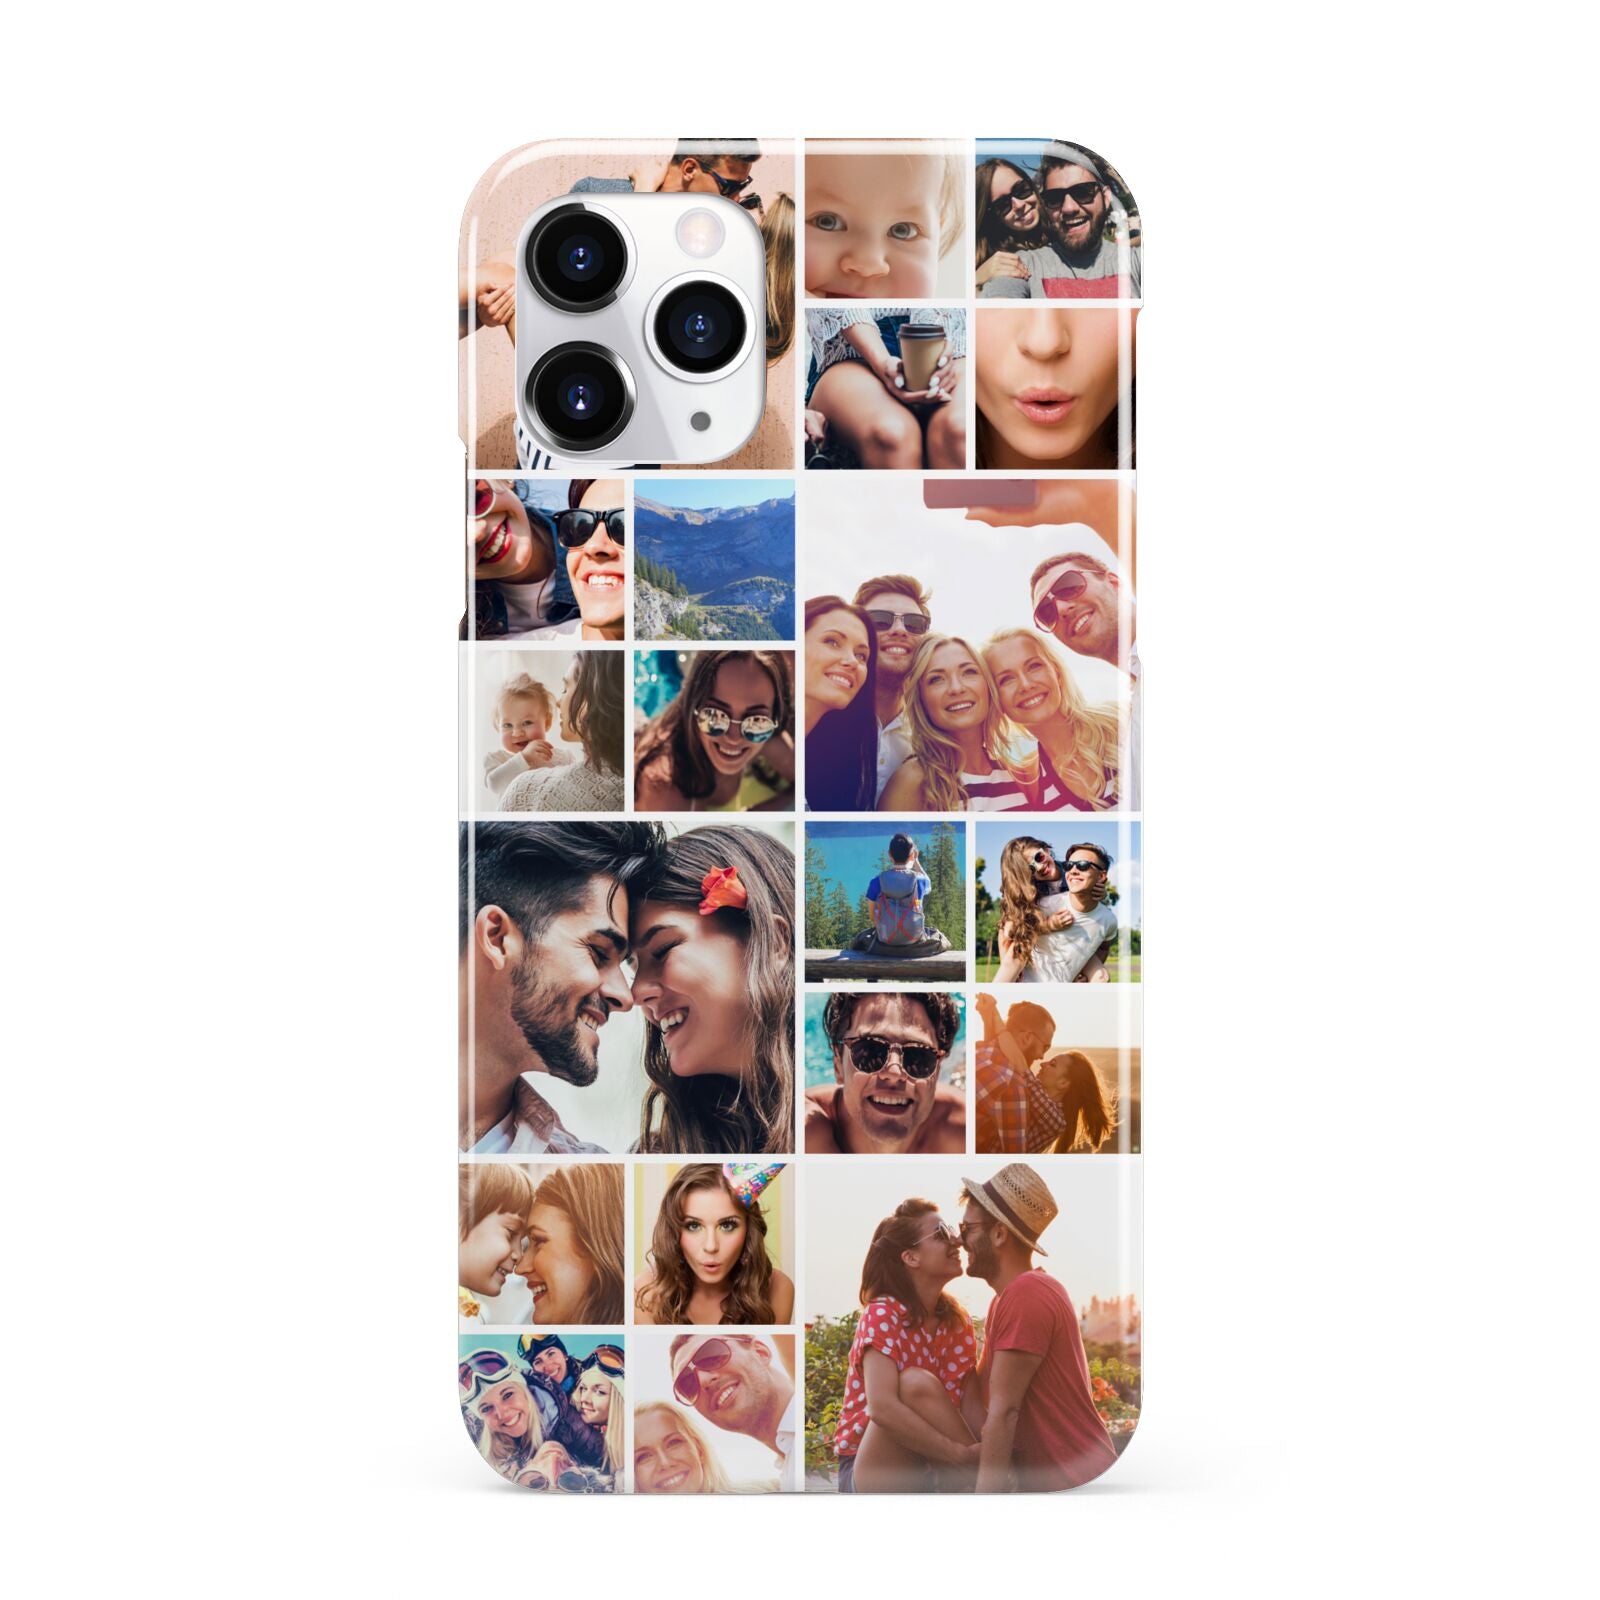 Photo Grid iPhone 11 Pro 3D Snap Case